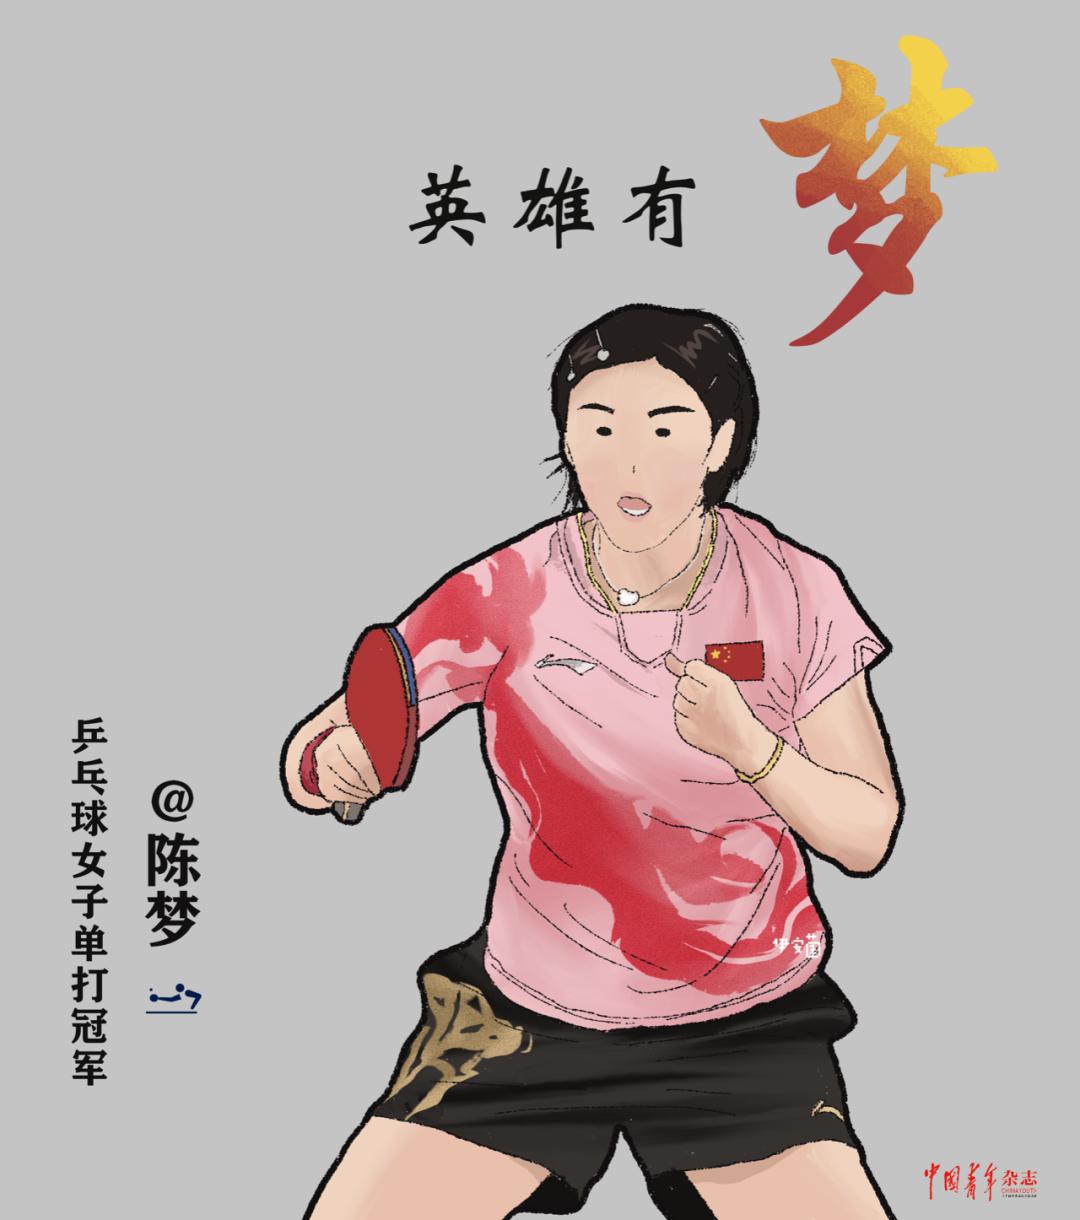 中国运动员绘画图片